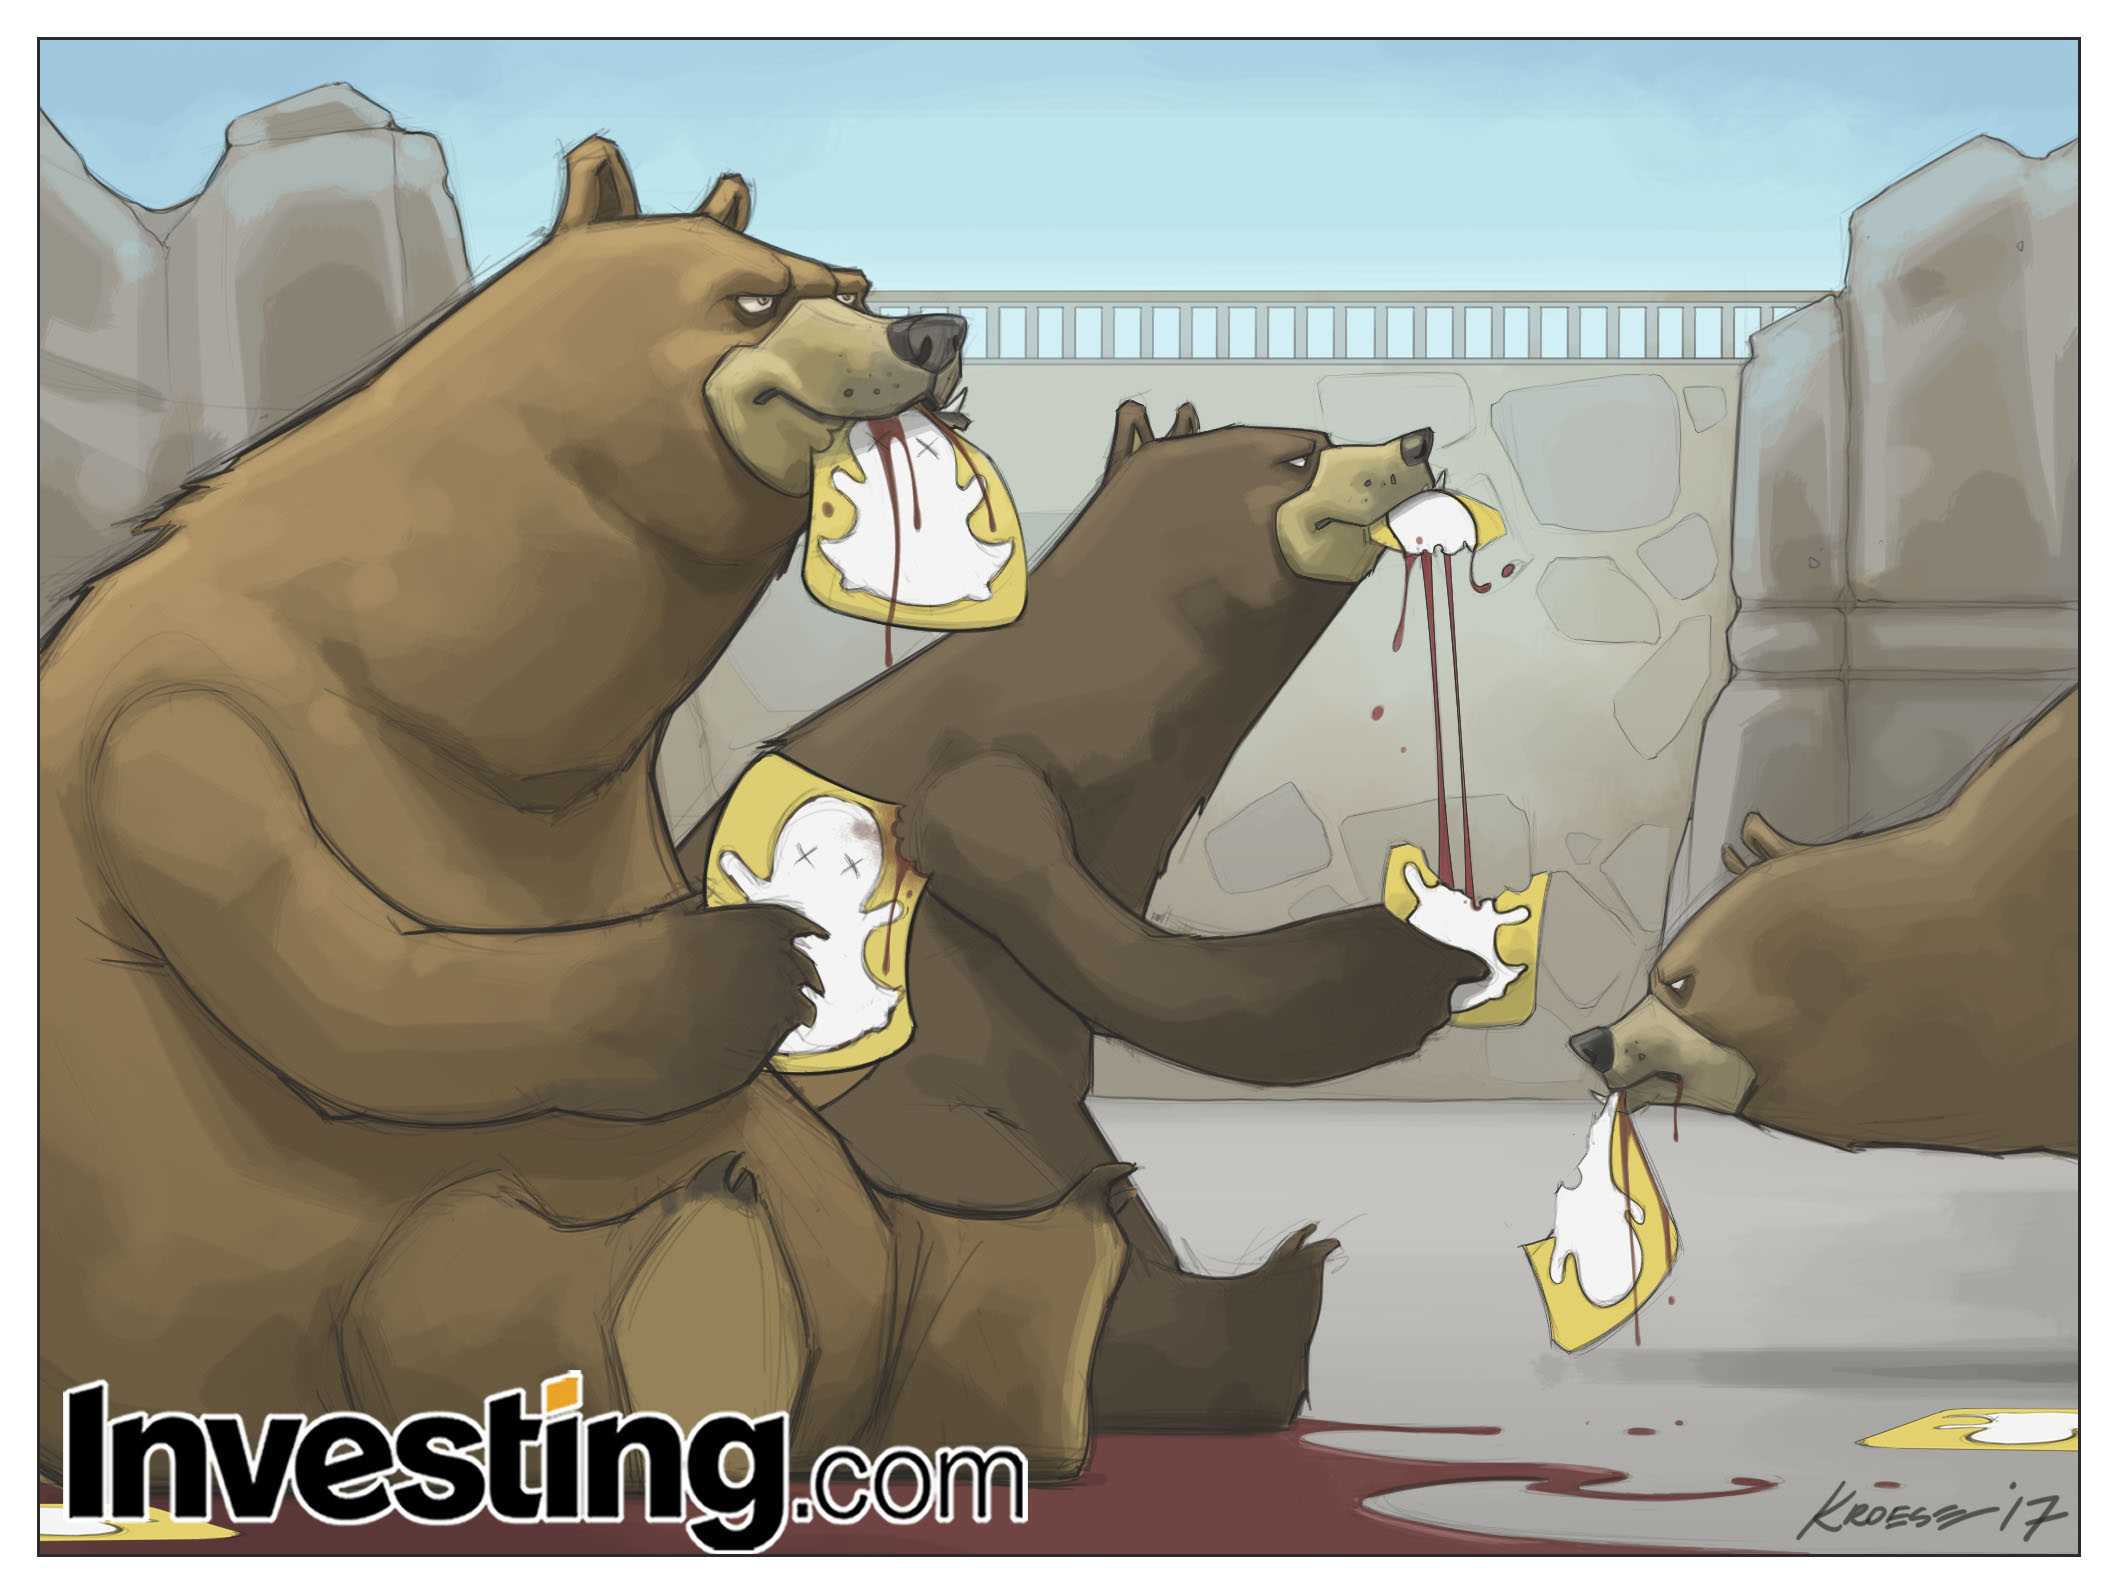 Les bears s’acharnent sur $SNAP, l’envolée initiale du titre s’est avérée éphémère